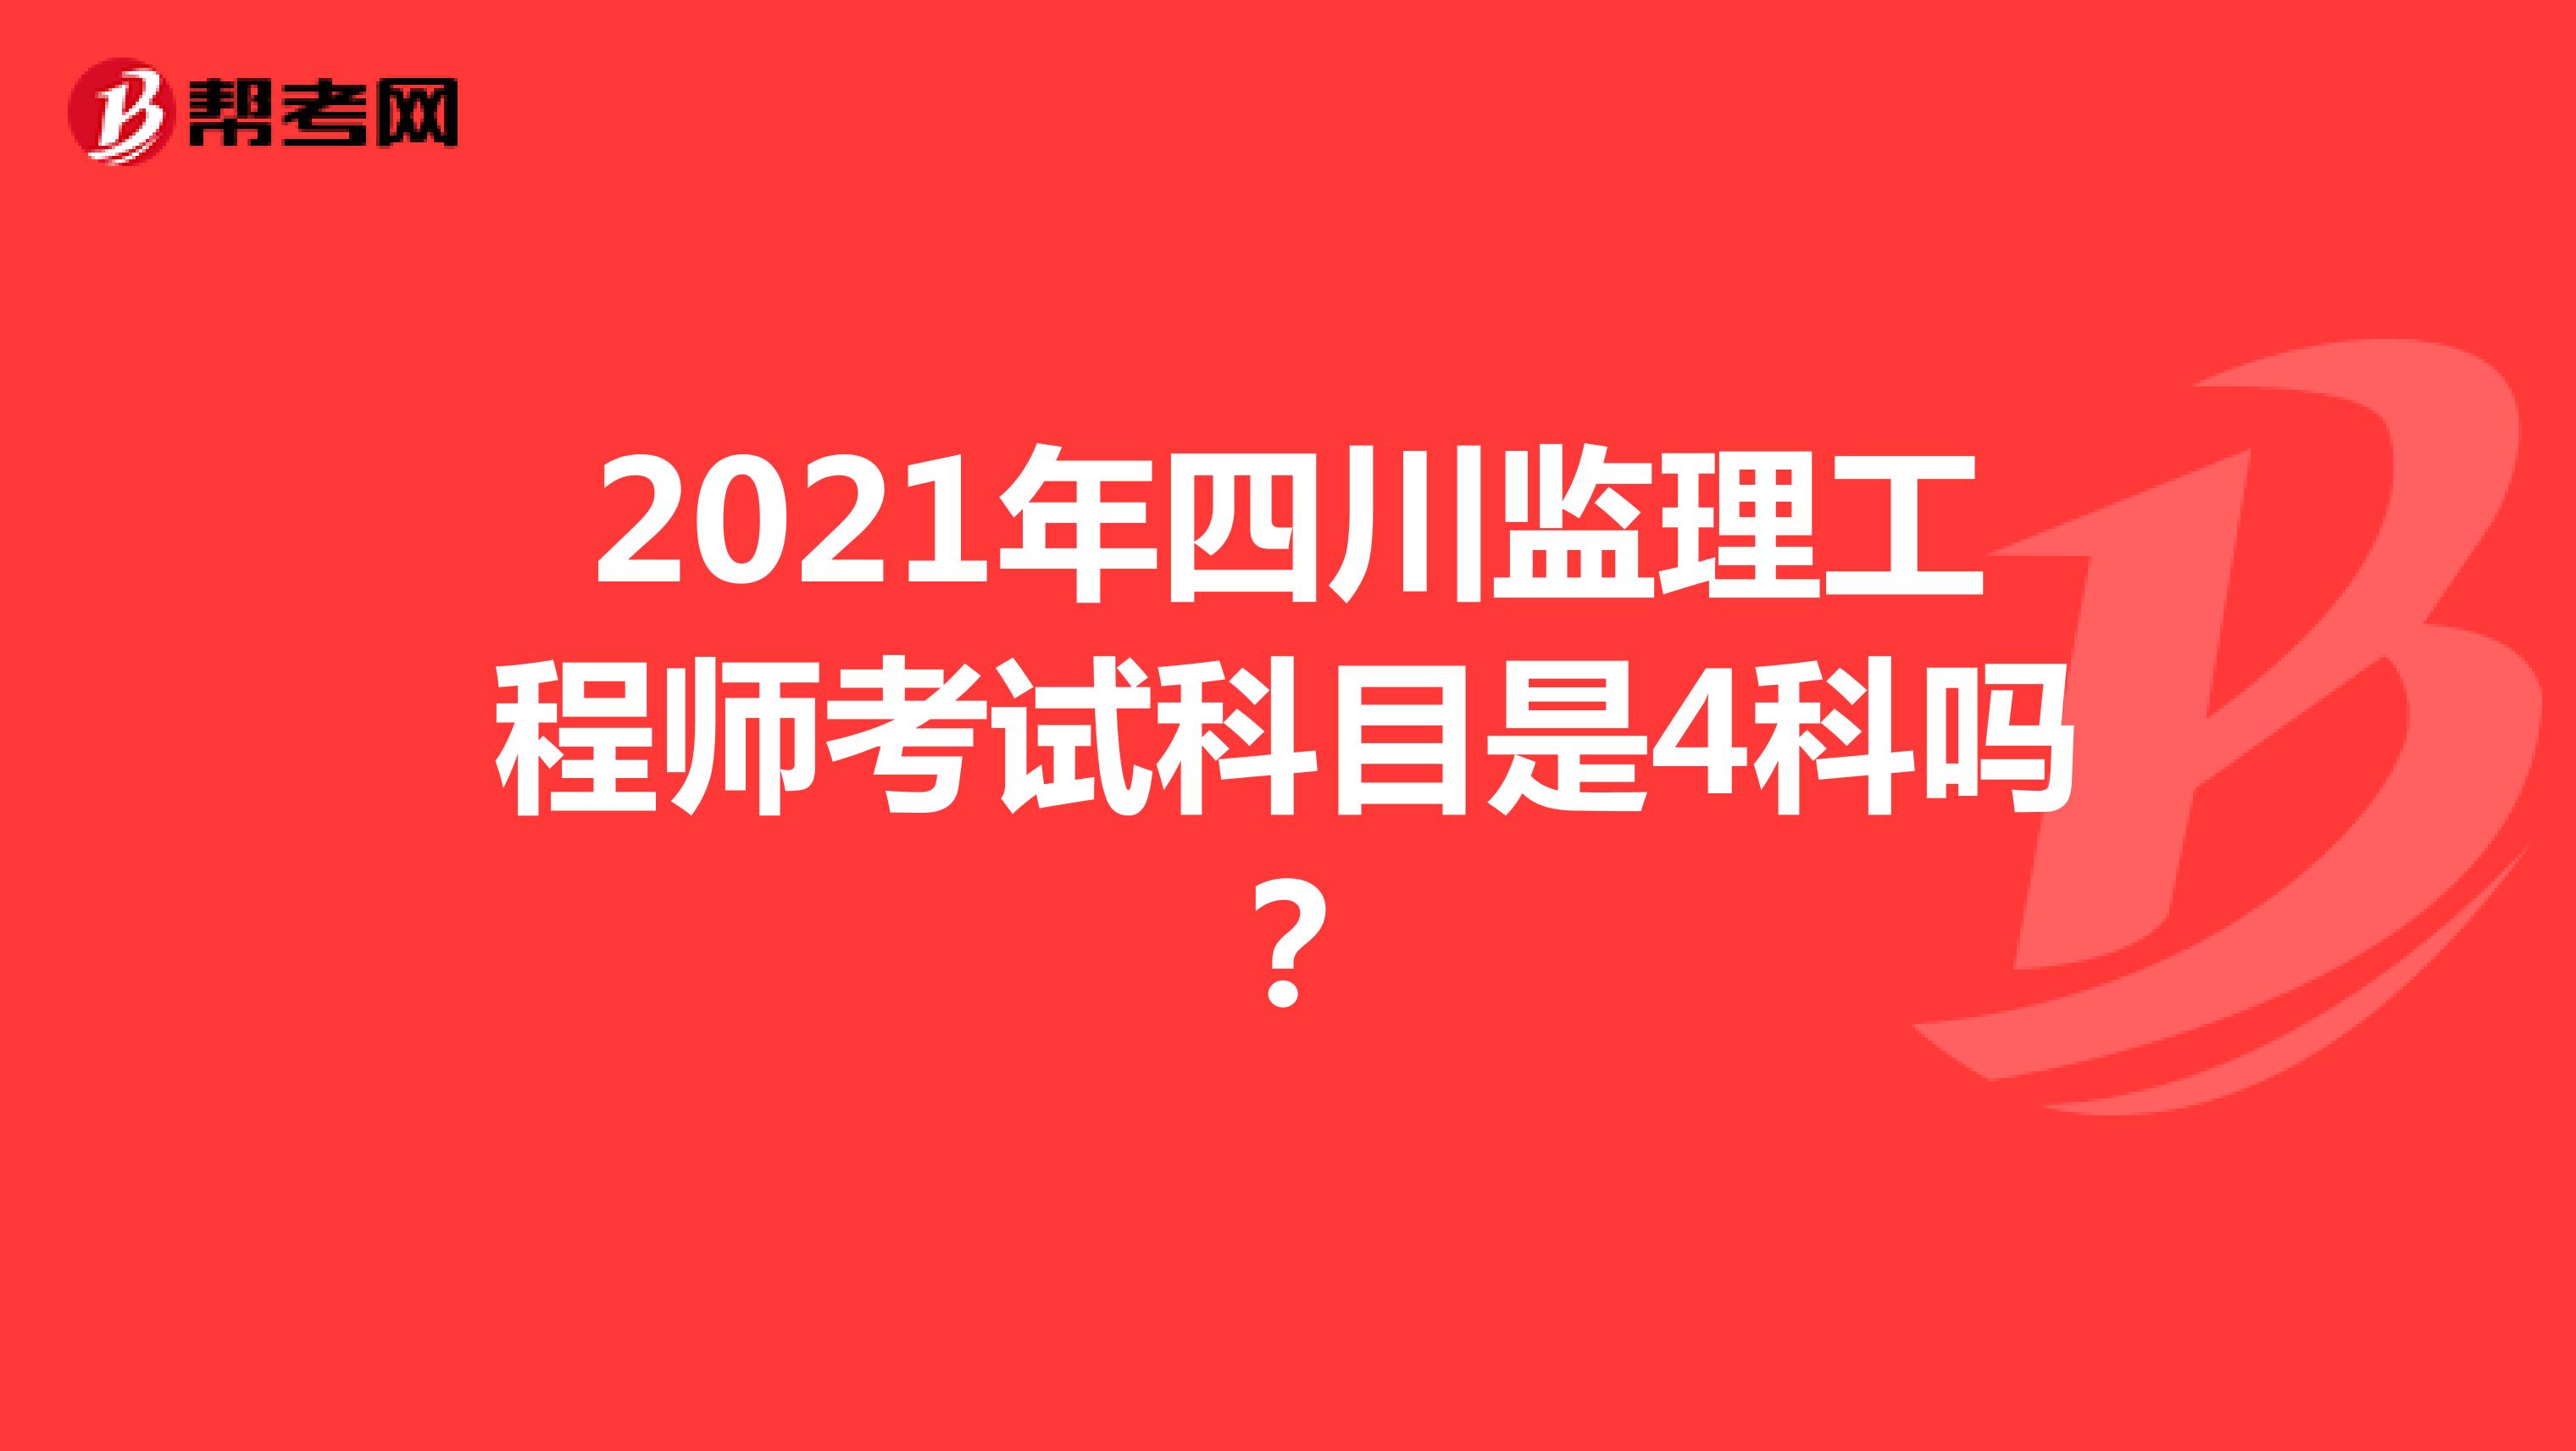 2021年四川监理工程师考试科目是4科吗？